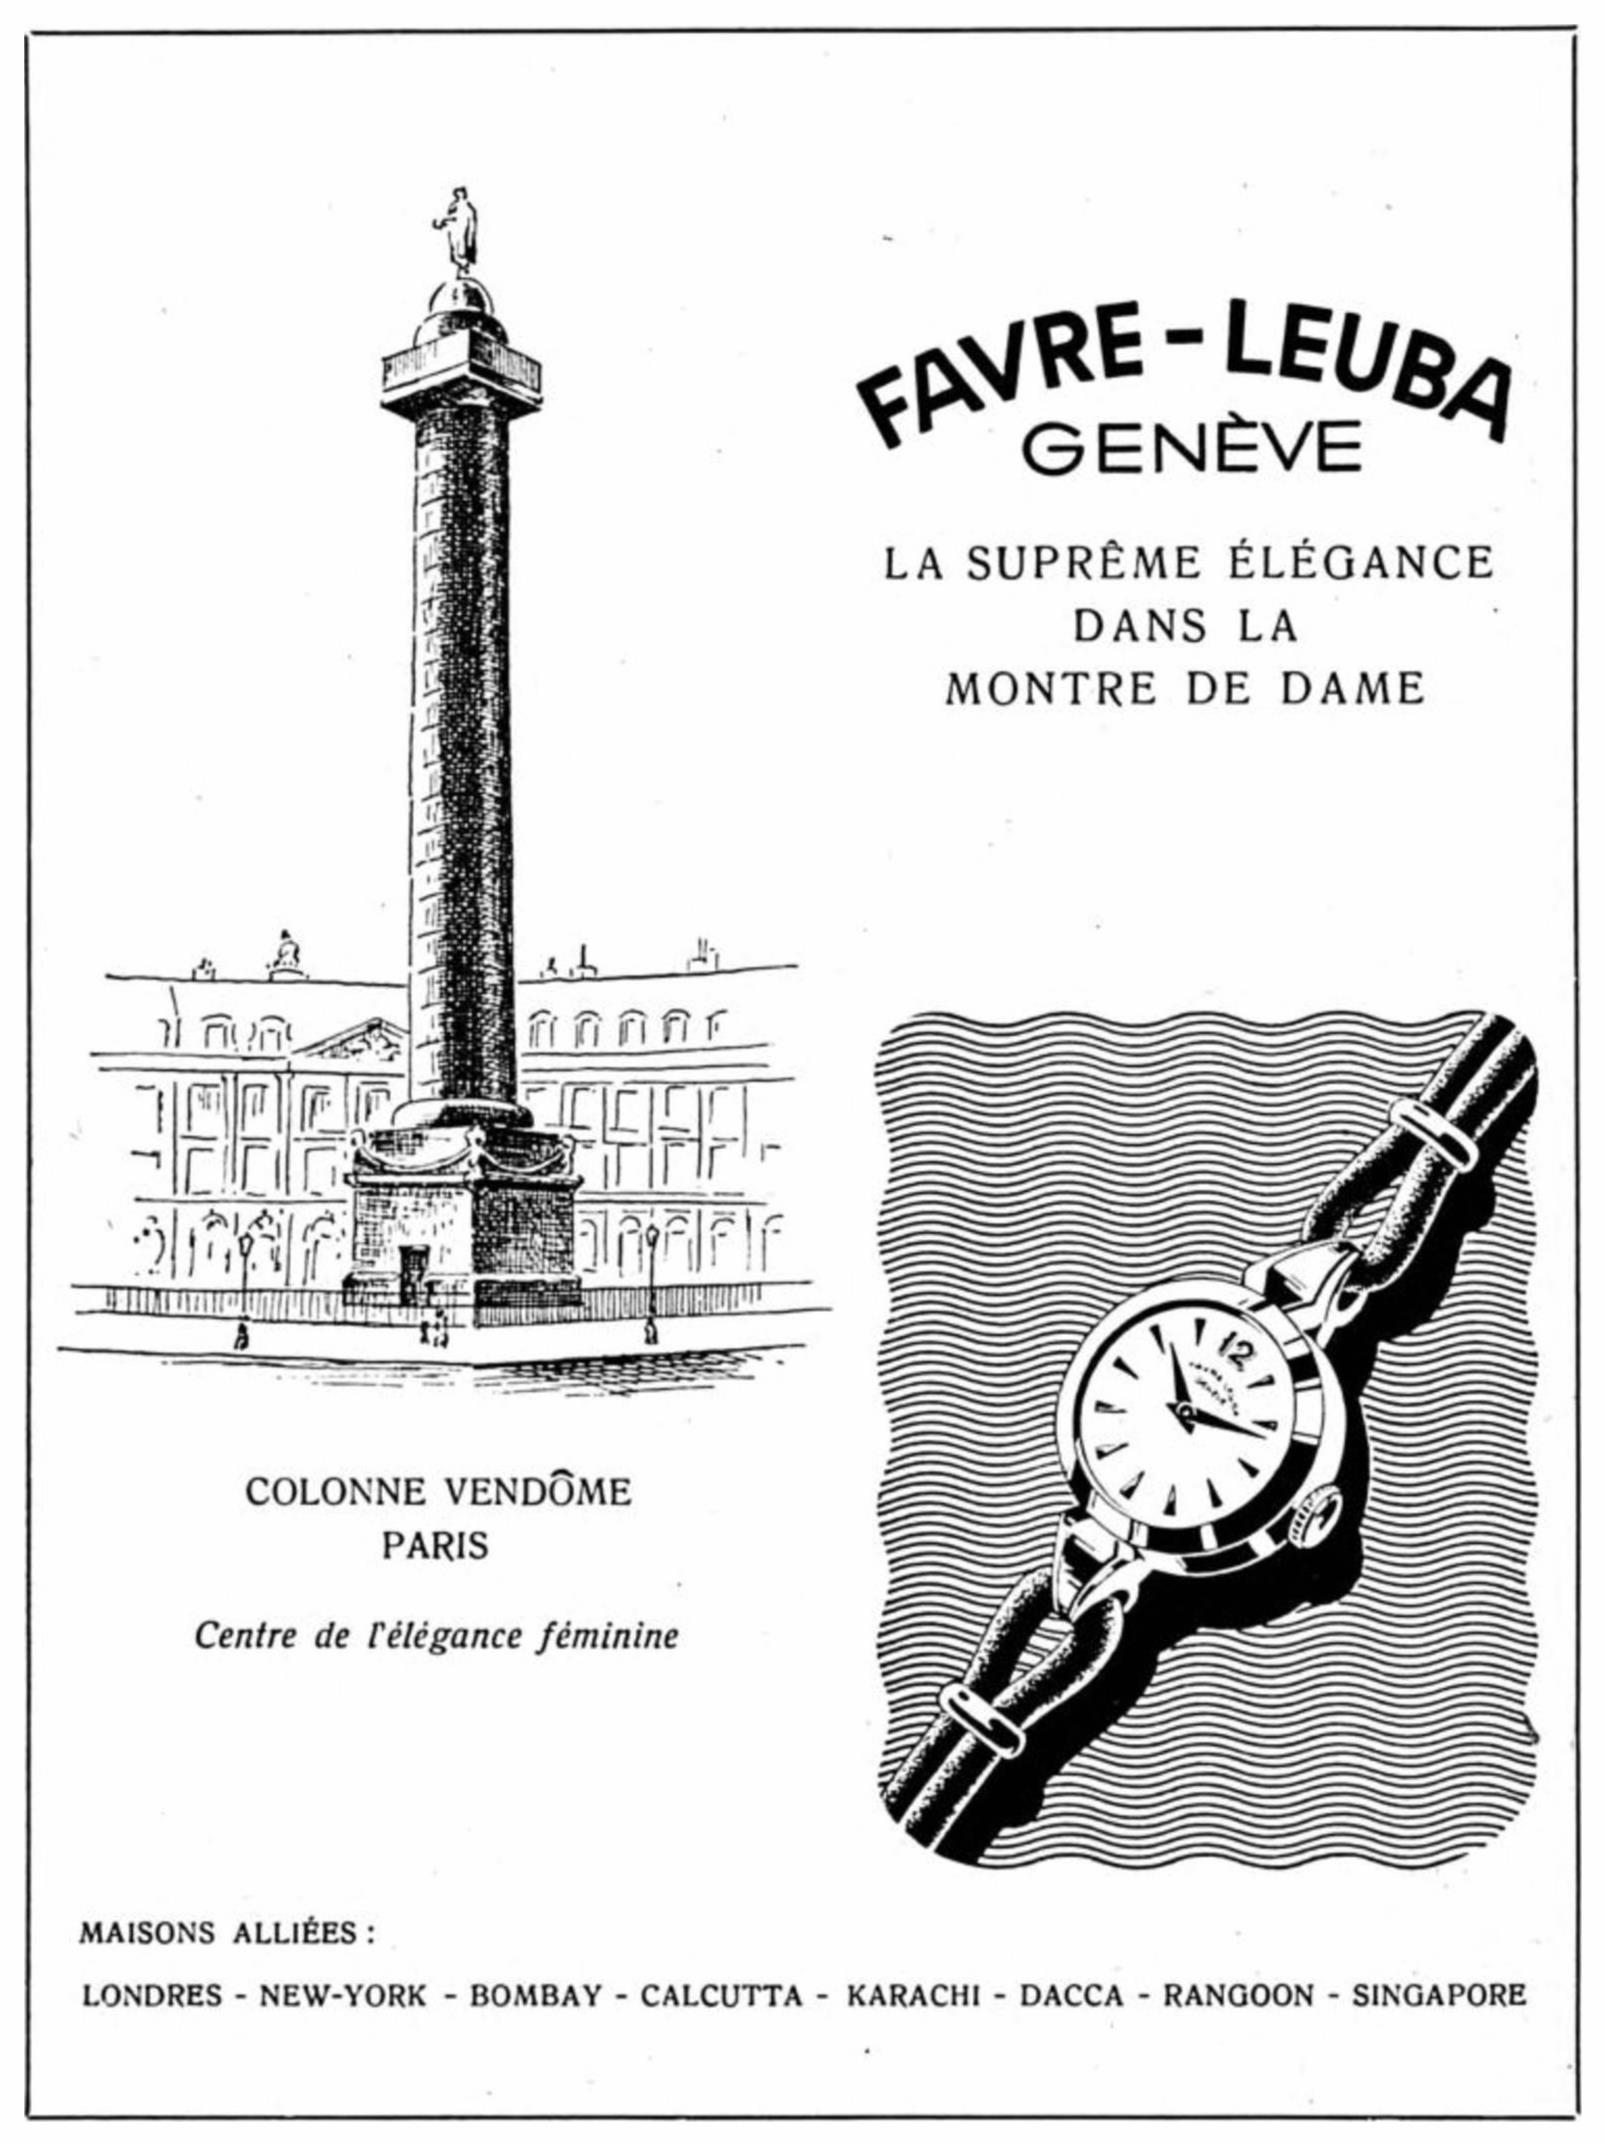 Favre-Leuba 1955 0.jpg